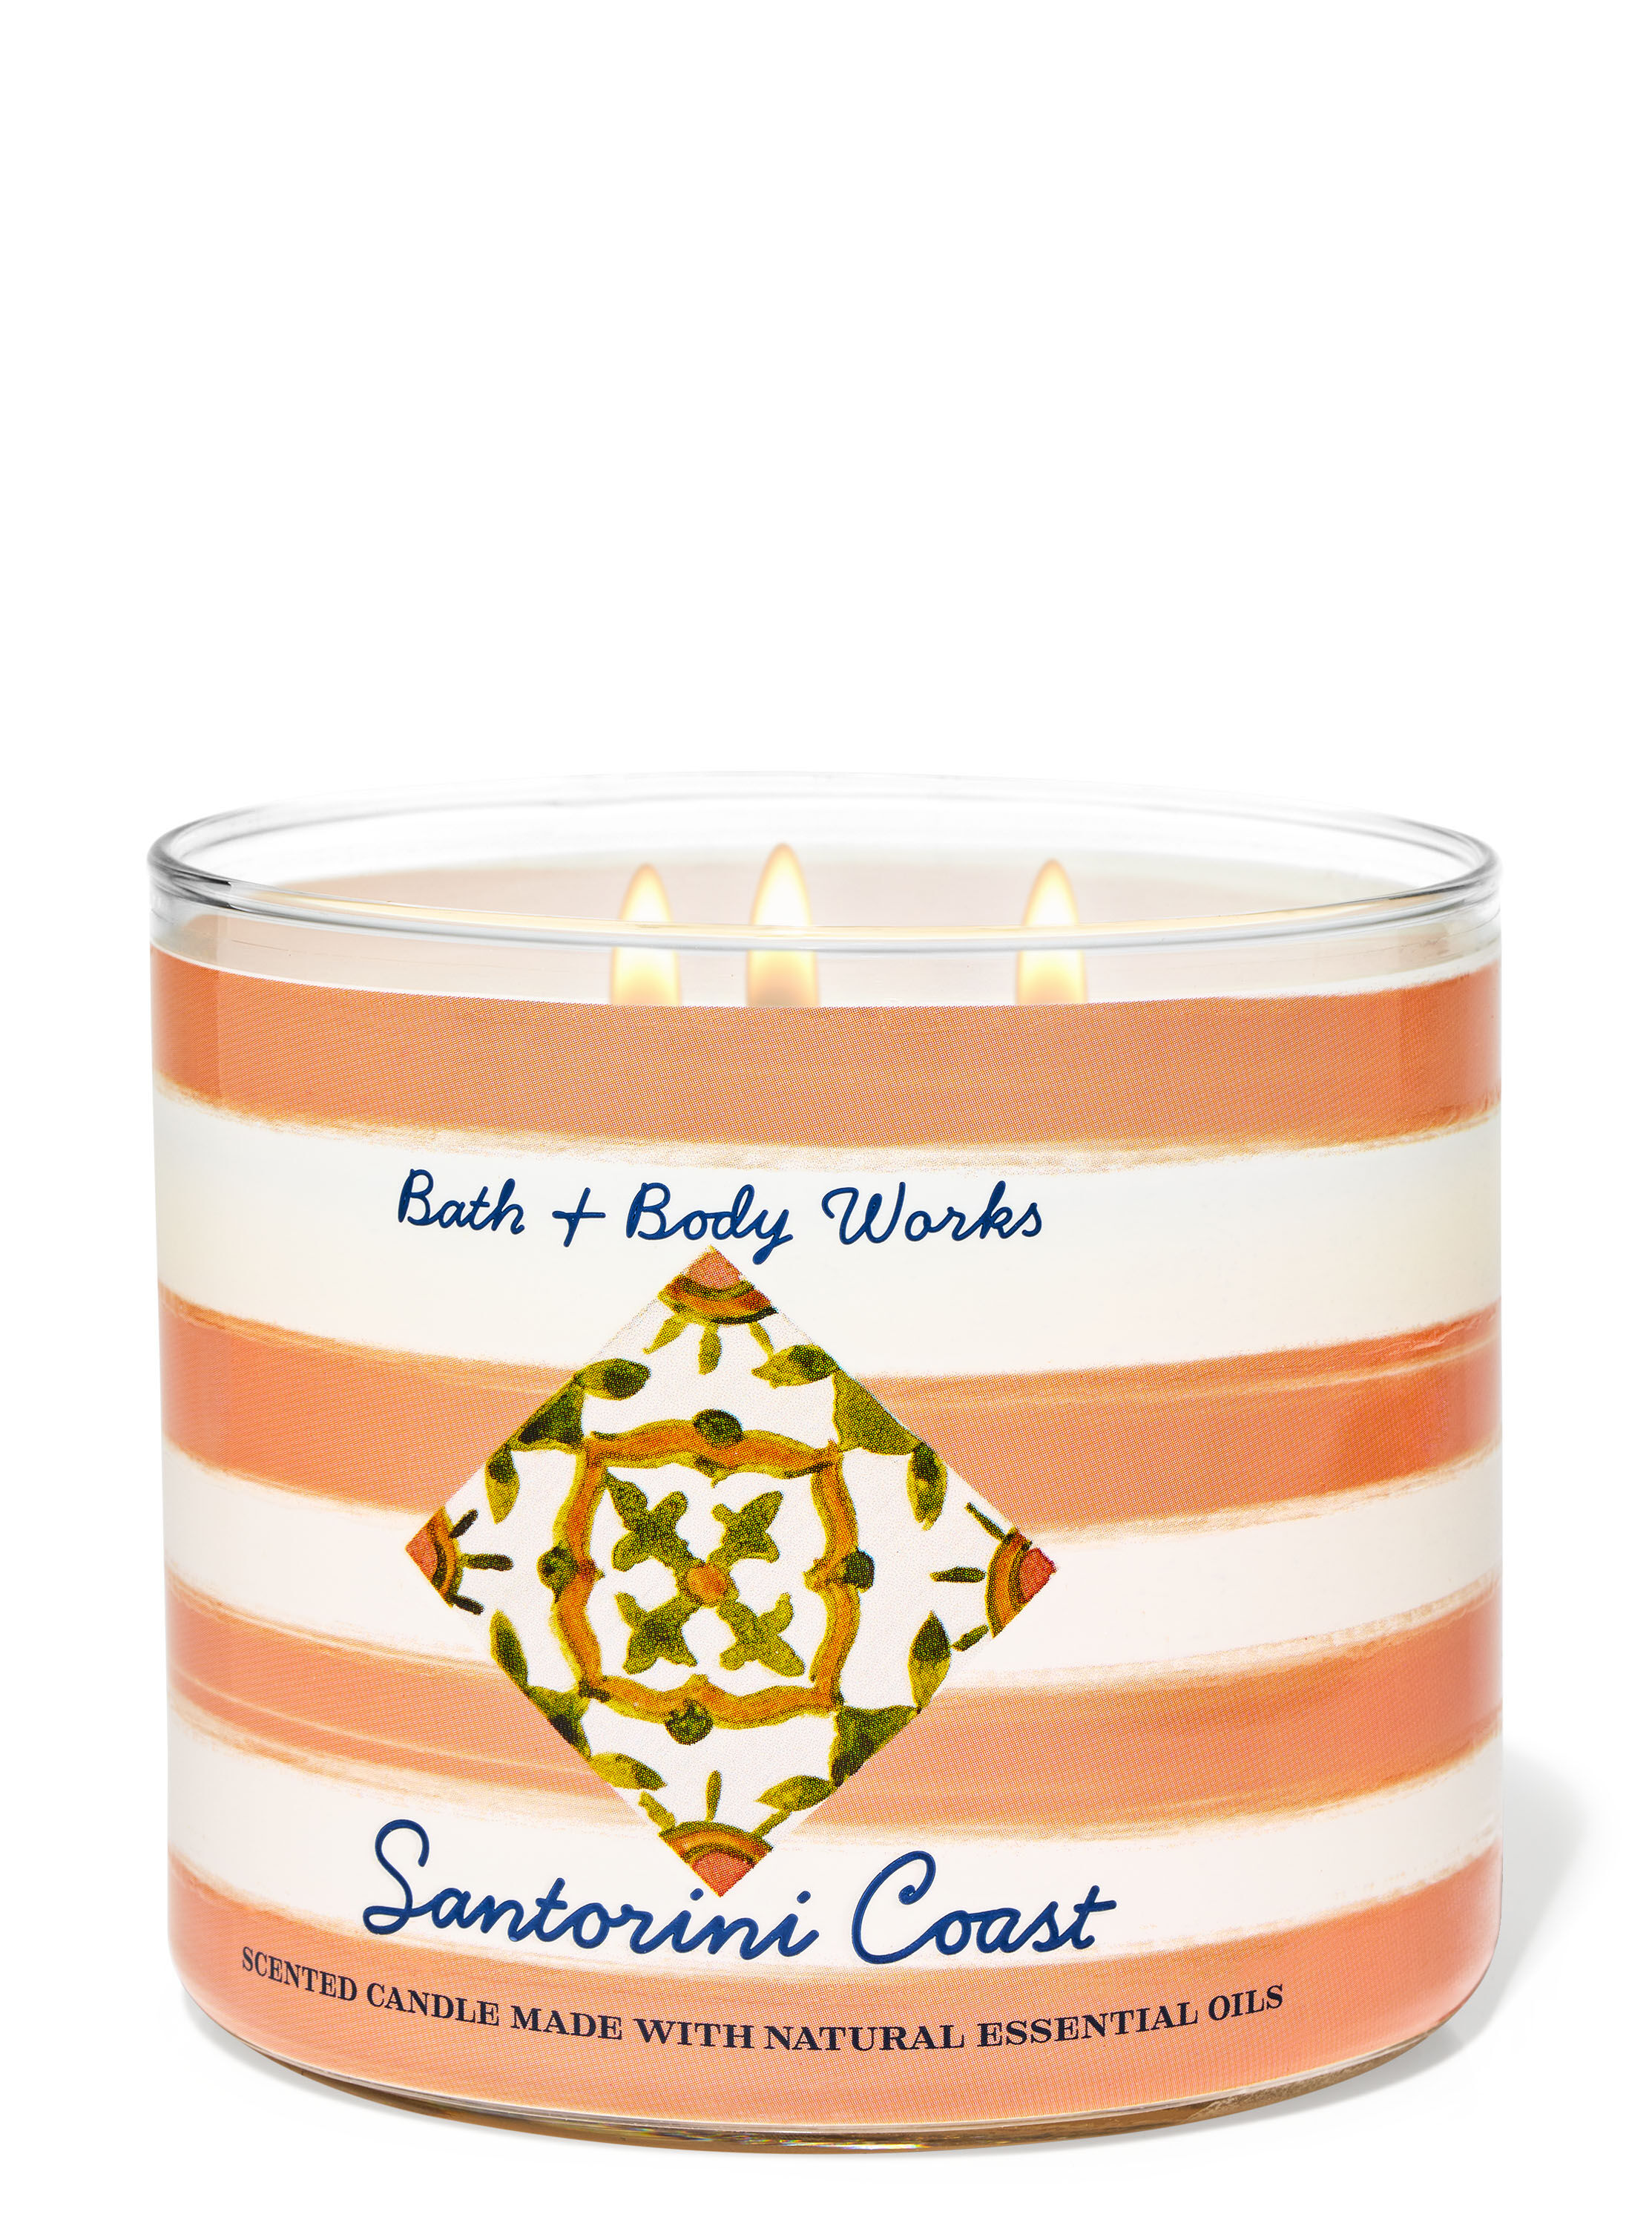 Santorini Coast 3-Wick Candle